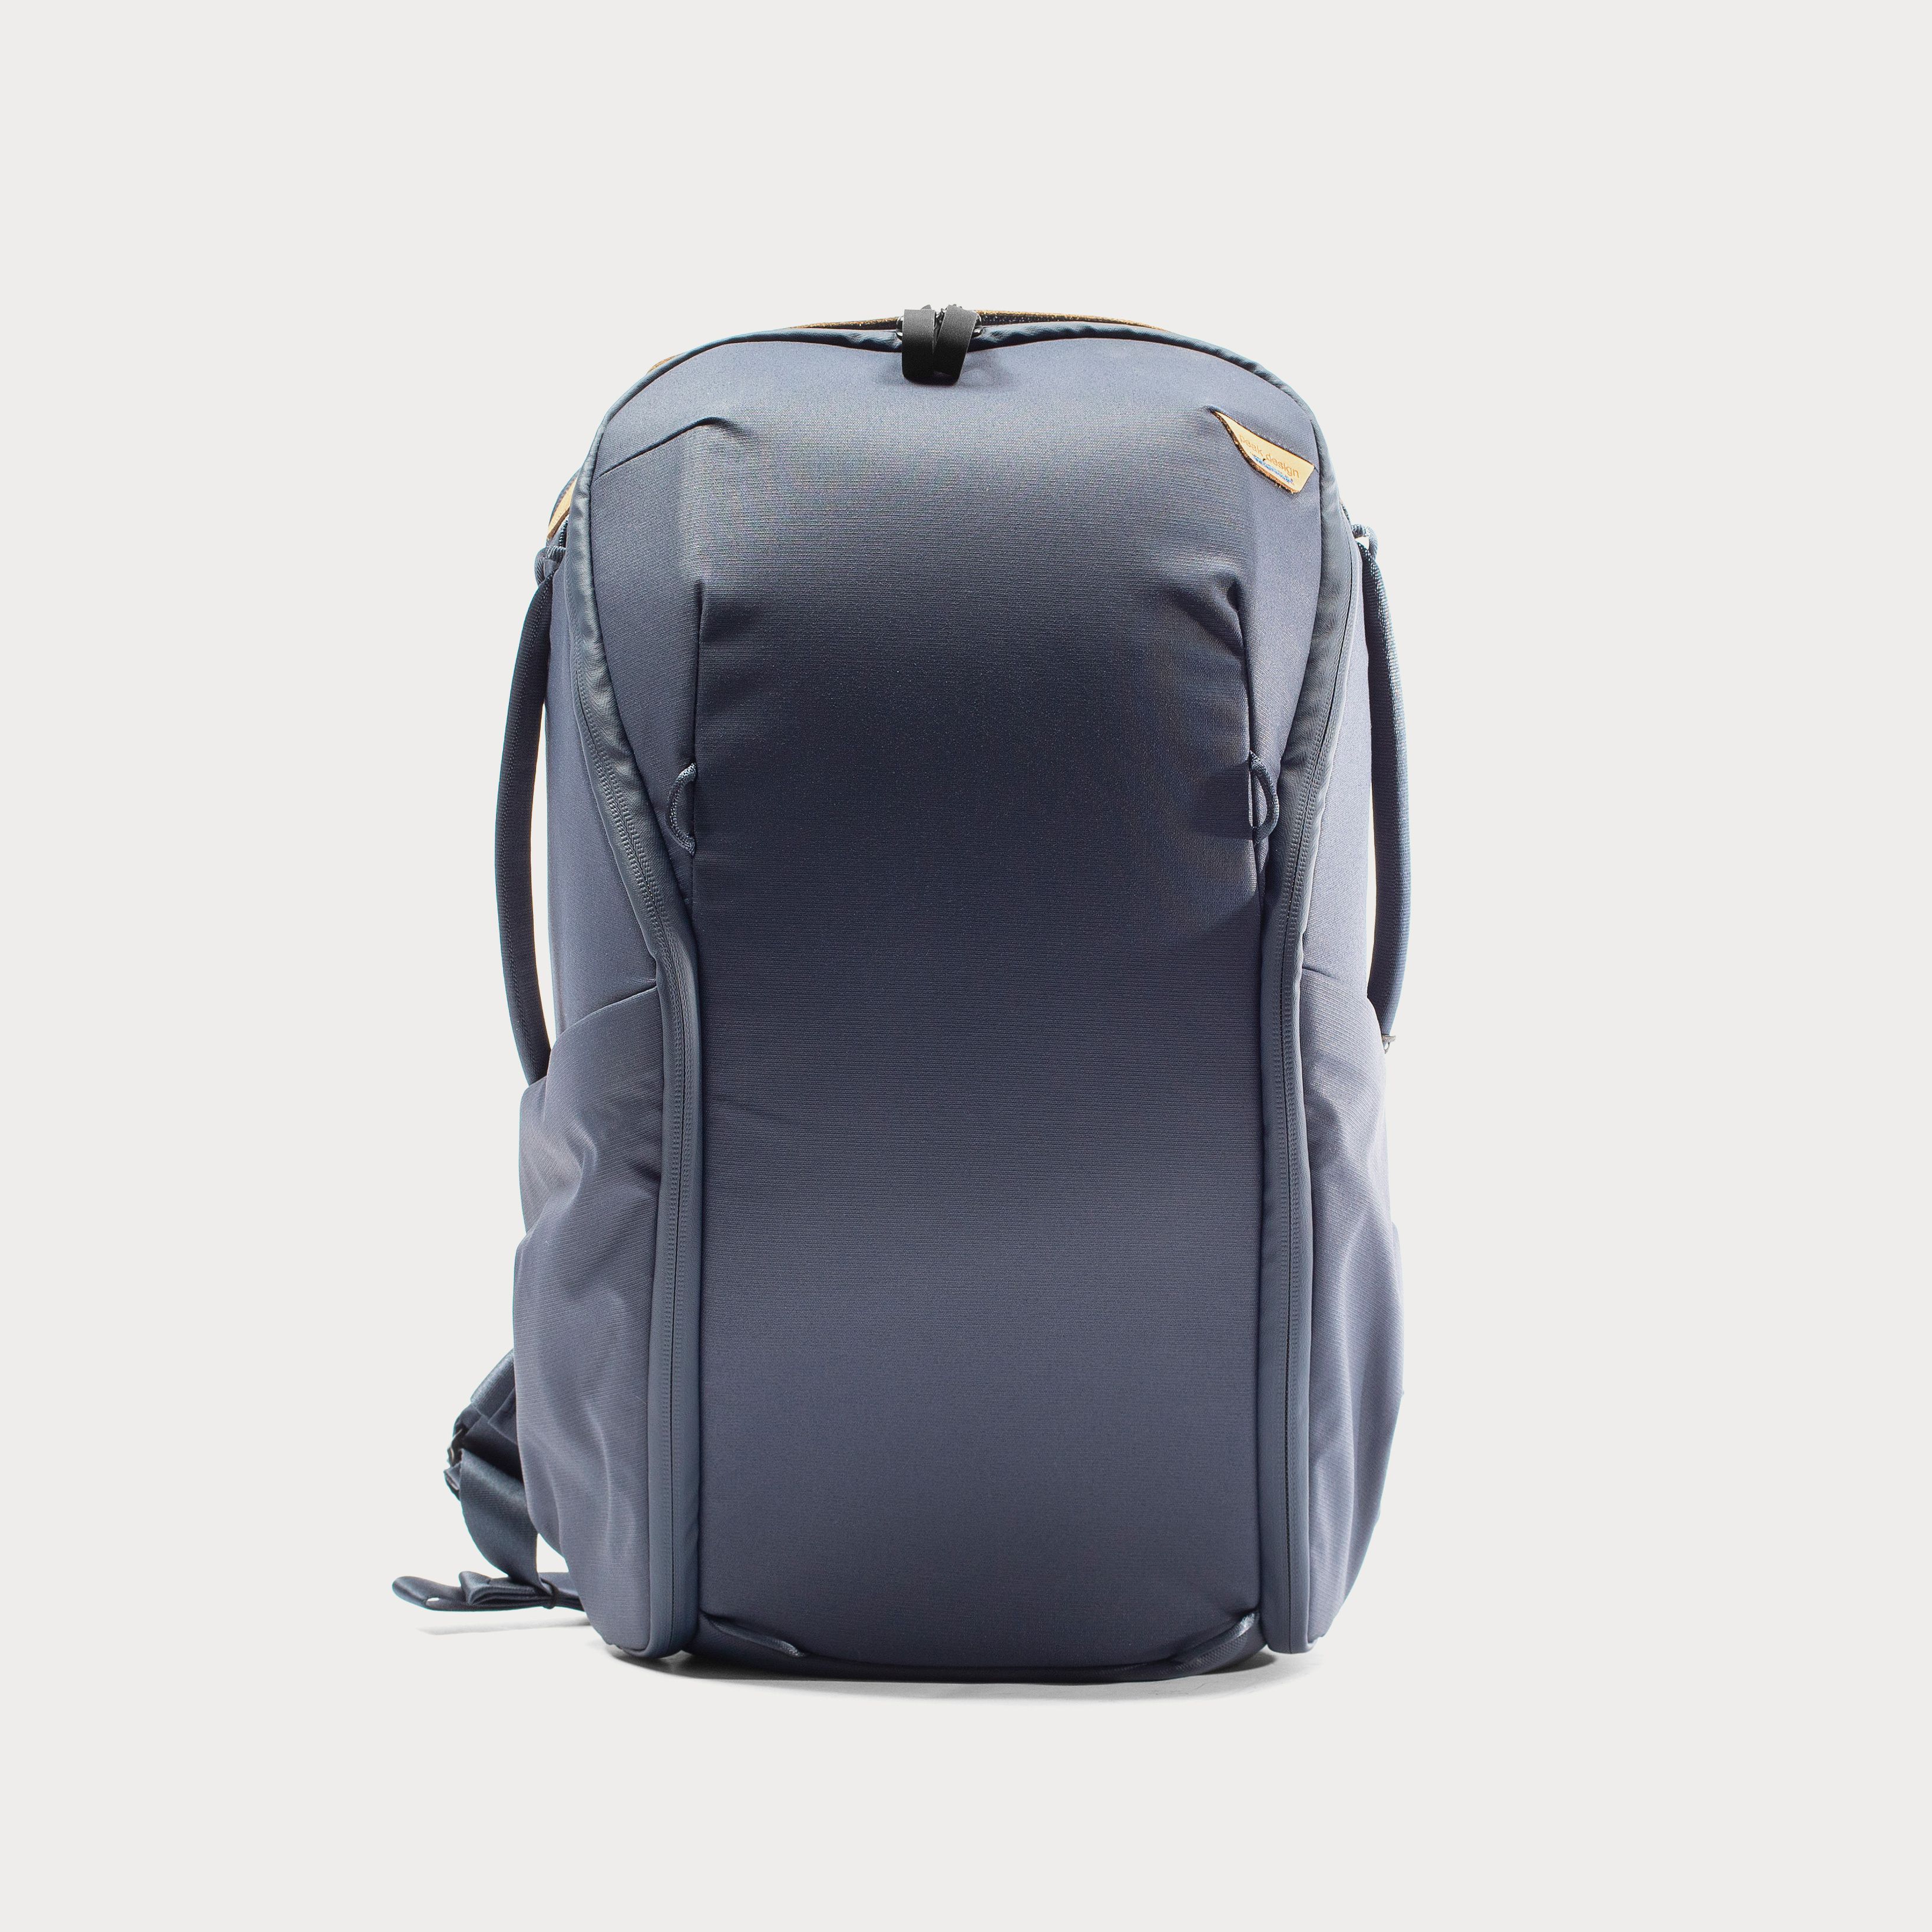 Peak Design Everyday Backpack v2 20L / 30L - Charcoal / 30L | Moment